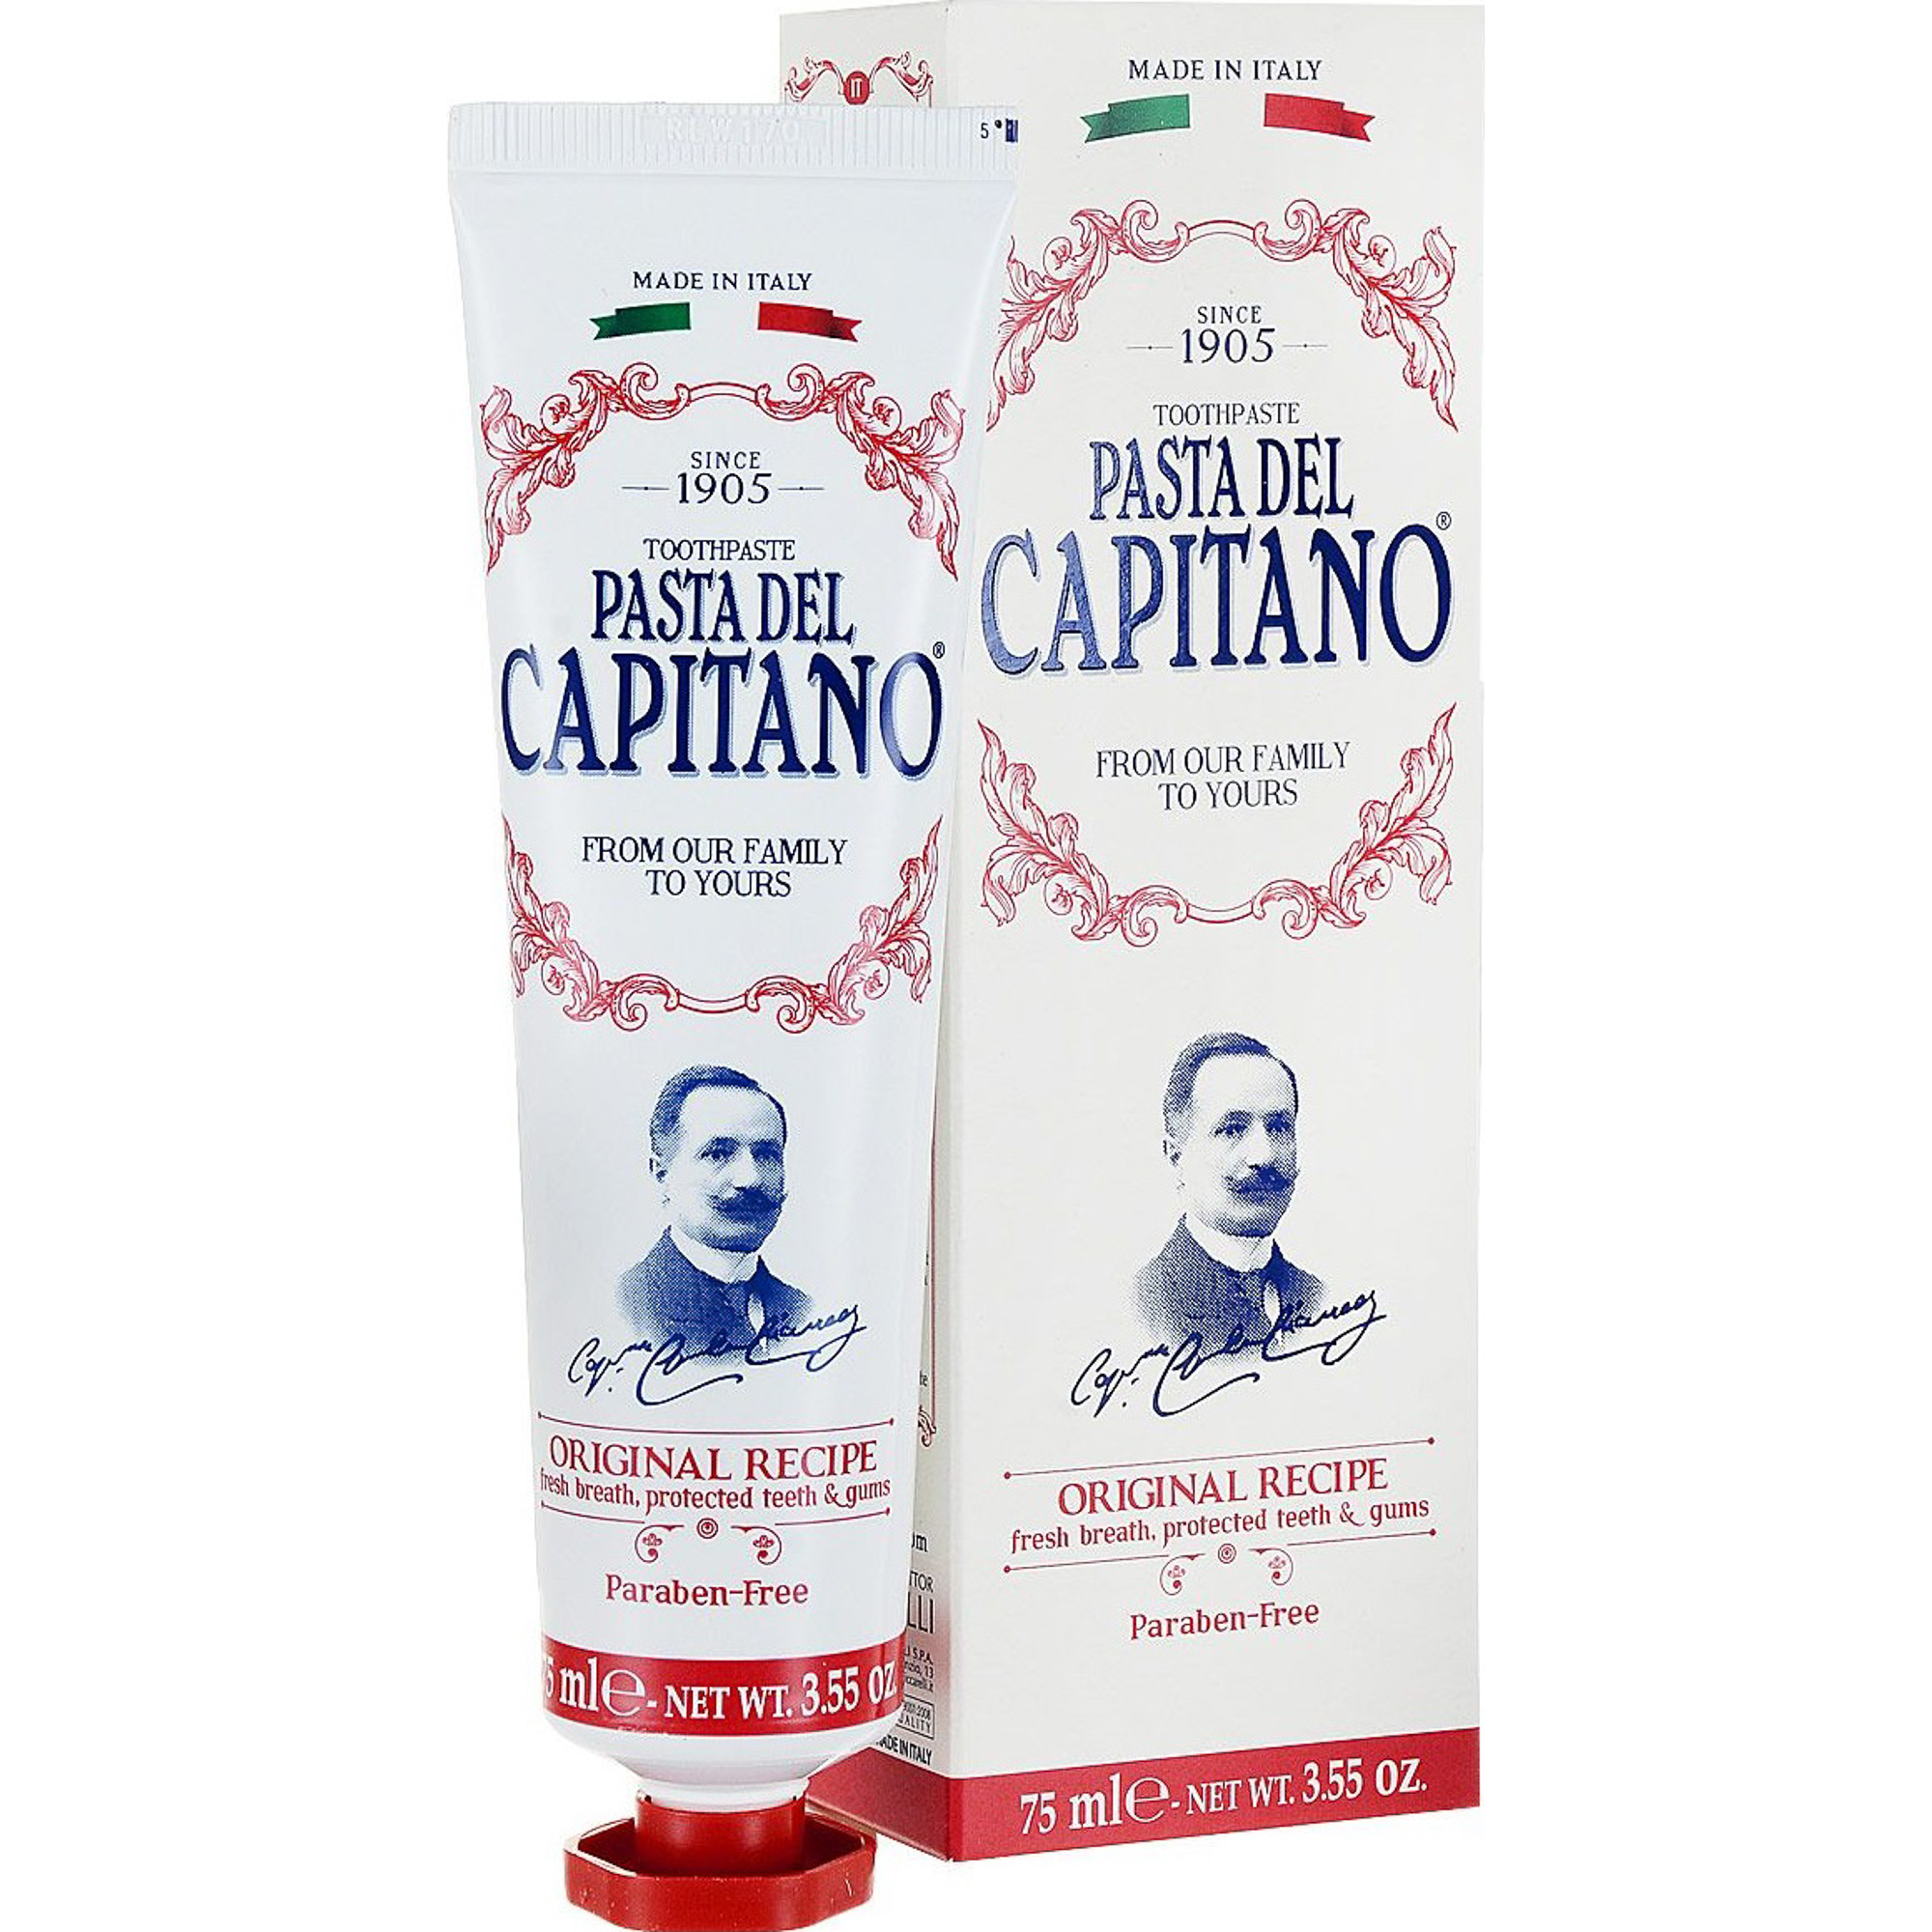 Зубная паста Pasta del Capitano Премиум, оригинальный рецепт, 75 мл зубная паста colgate тройное действие натуральная мята 50 мл